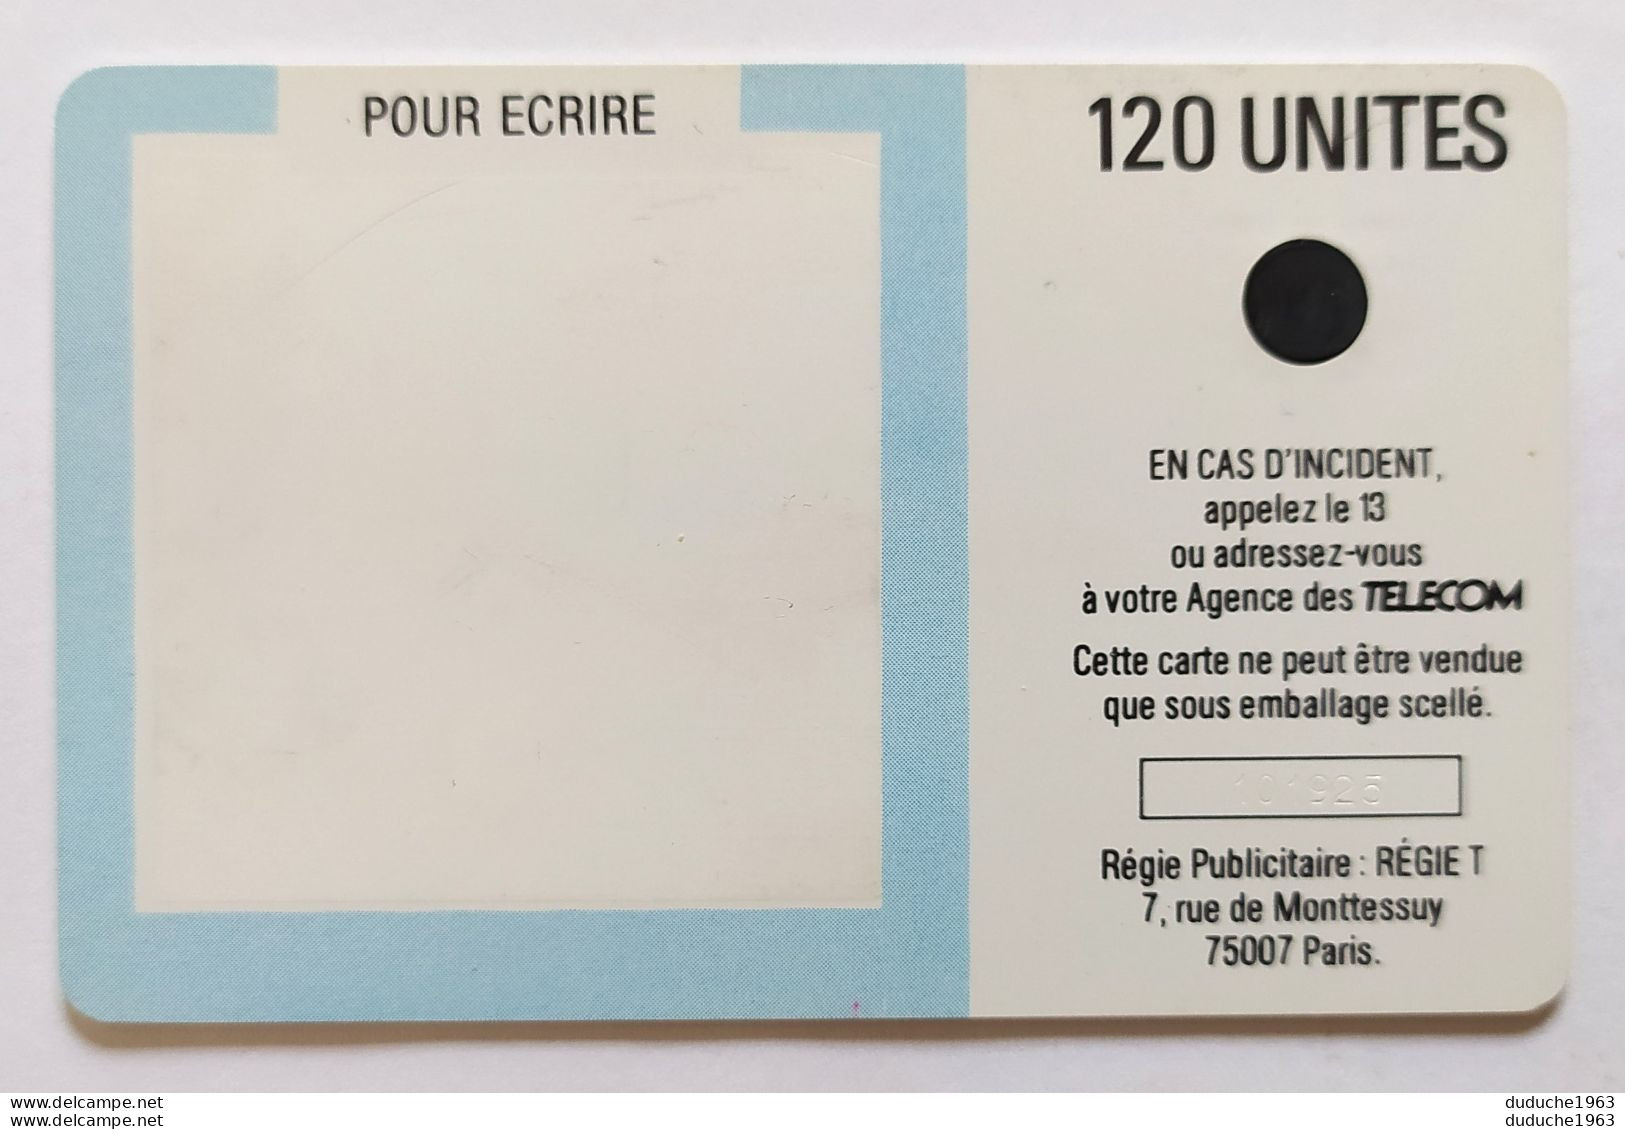 Télécarte France - Jean Cortot 1987 - Non Classificati